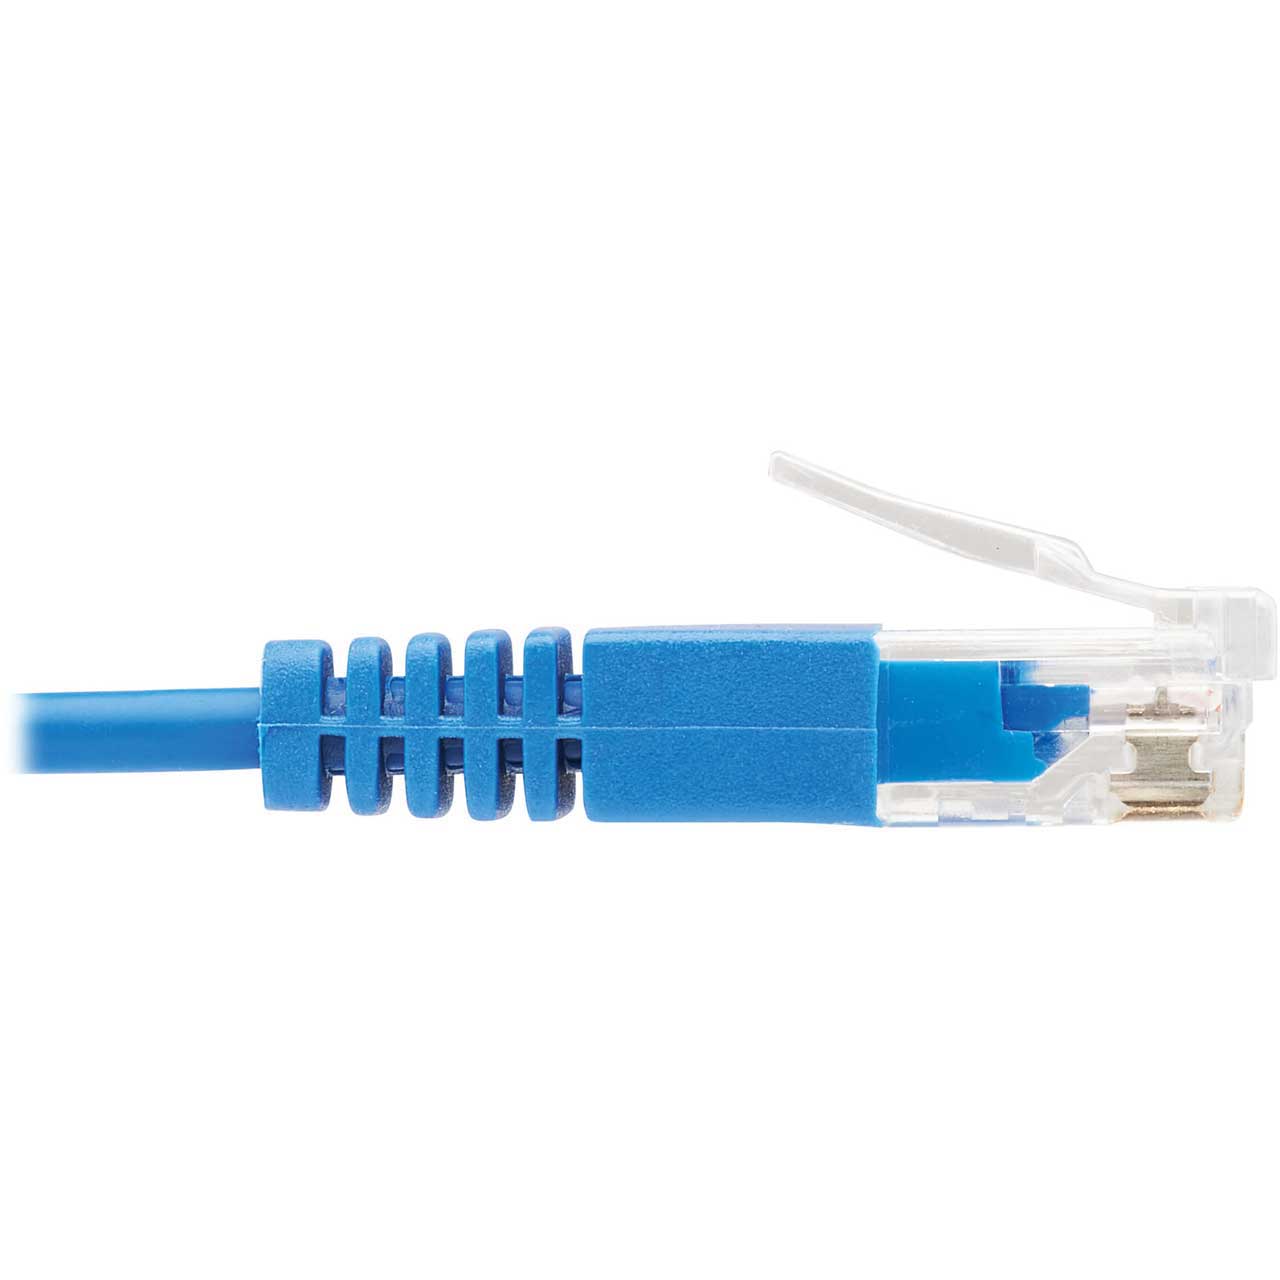 Premium 10 Gigabit Ethernet Retractable Network Cable Cat 6 Ultra Flat RJ45  Connectors for LAN Network Modem Router PC Printers Box 